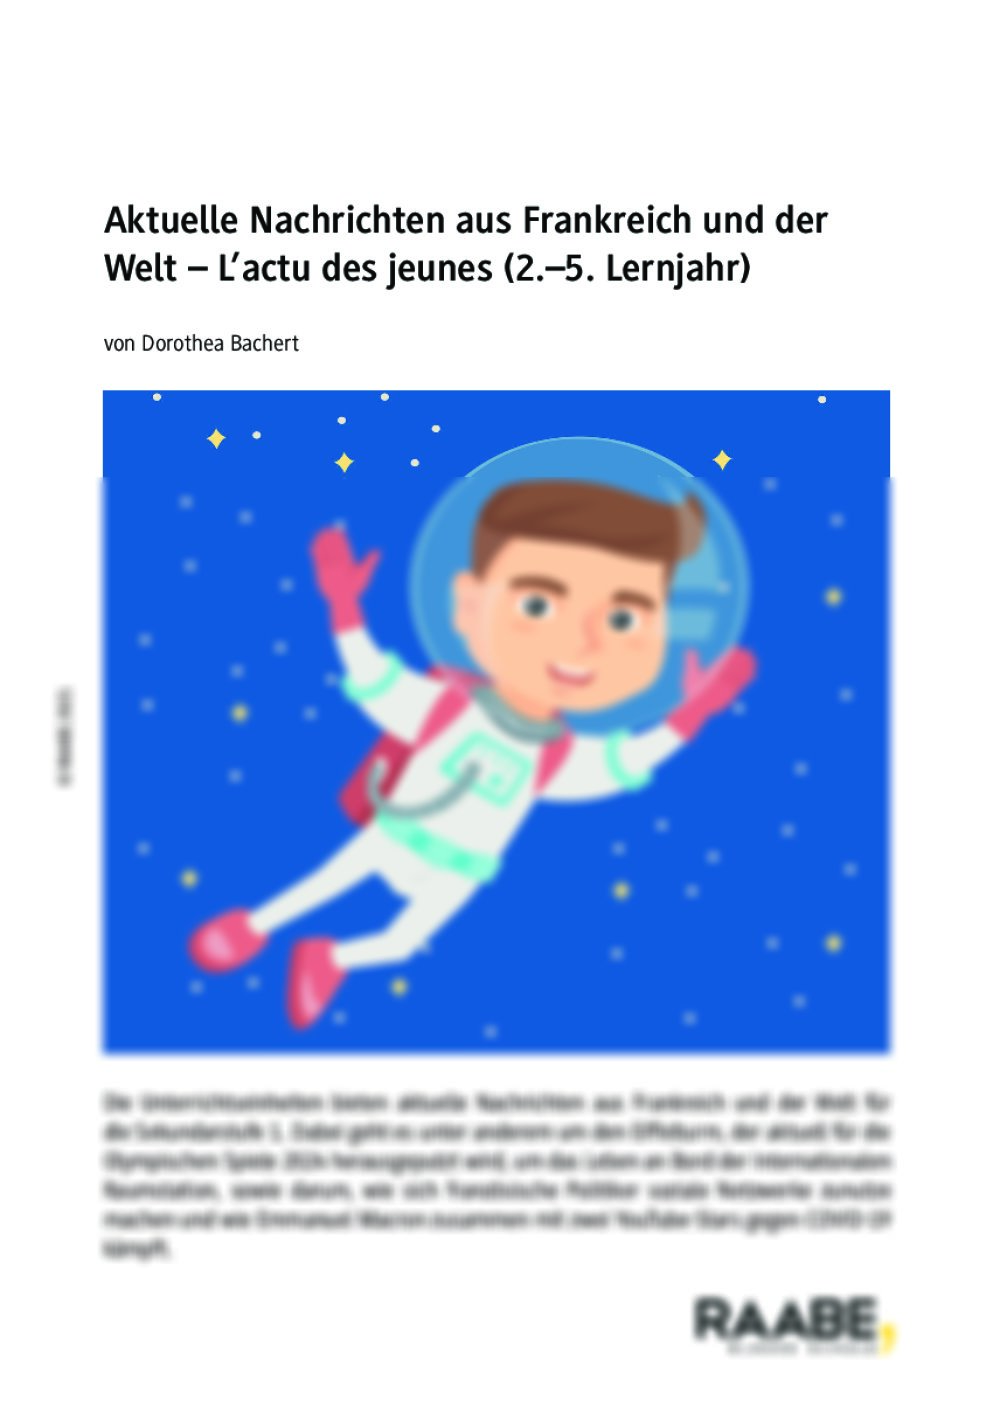 Leben auf der ISS – L’actu des jeunes I - Seite 1